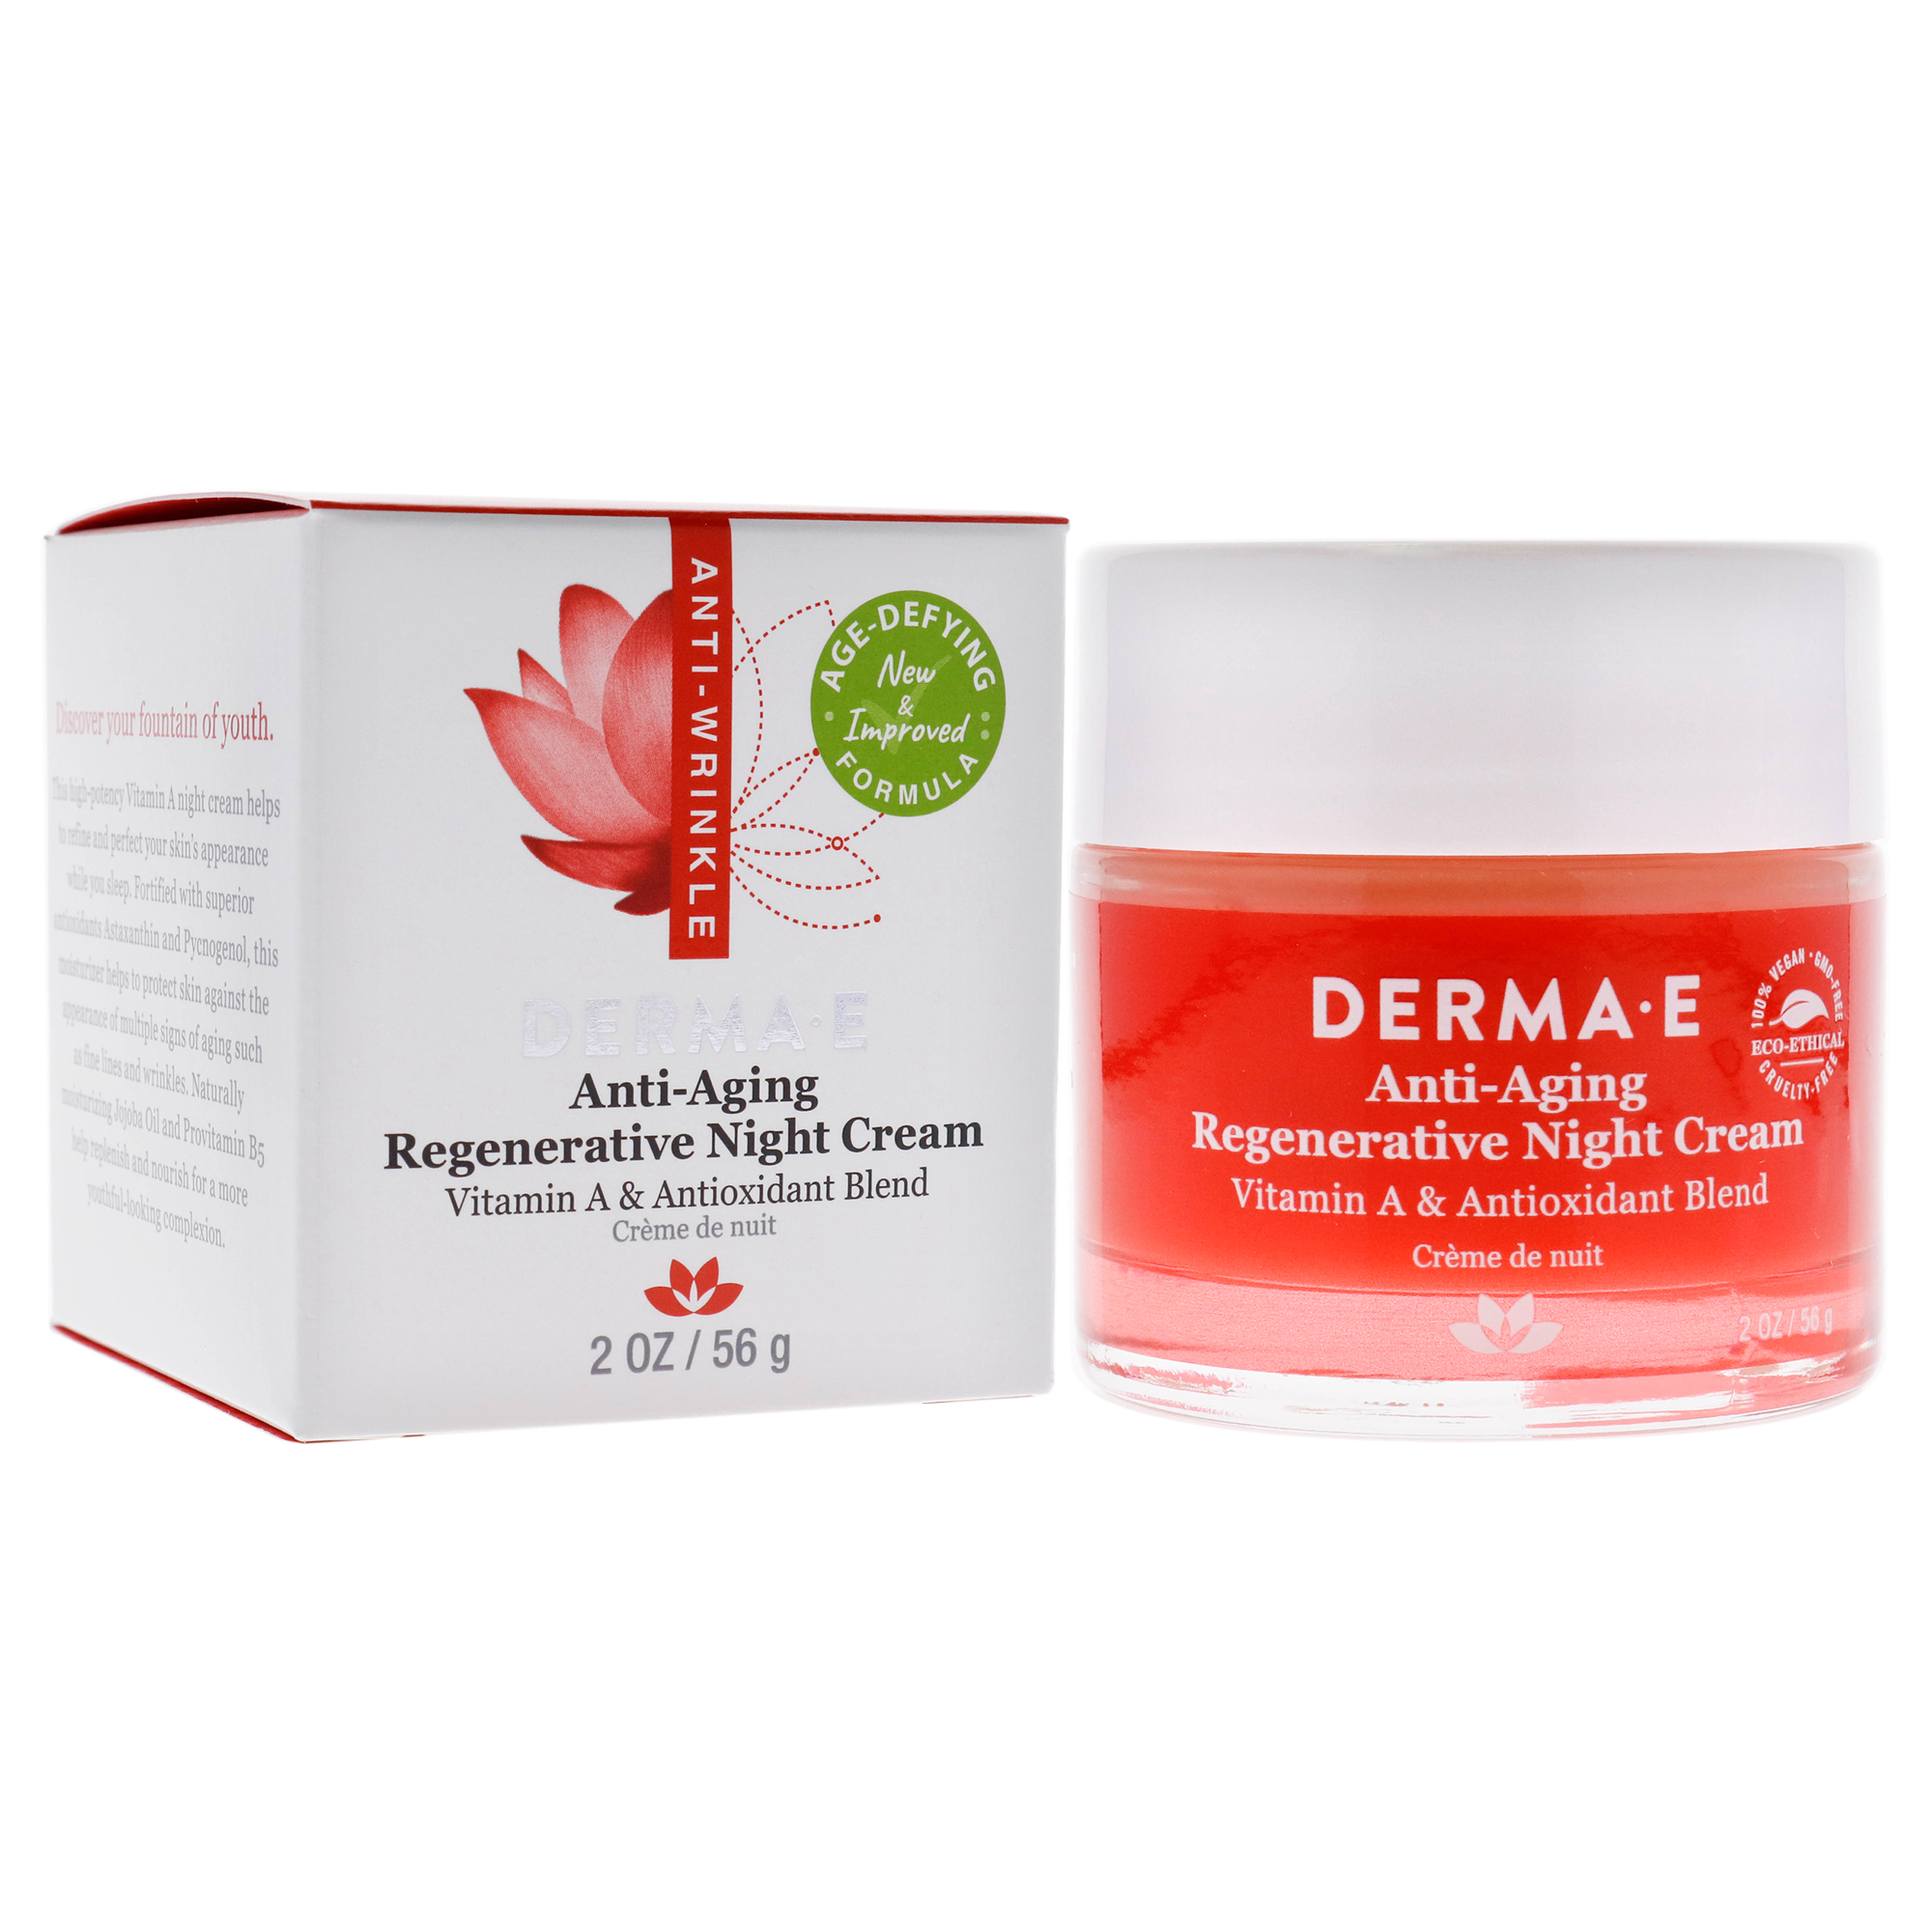 Derma E Anti-Aging Regenerative Night Cream, 2 oz - image 4 of 7